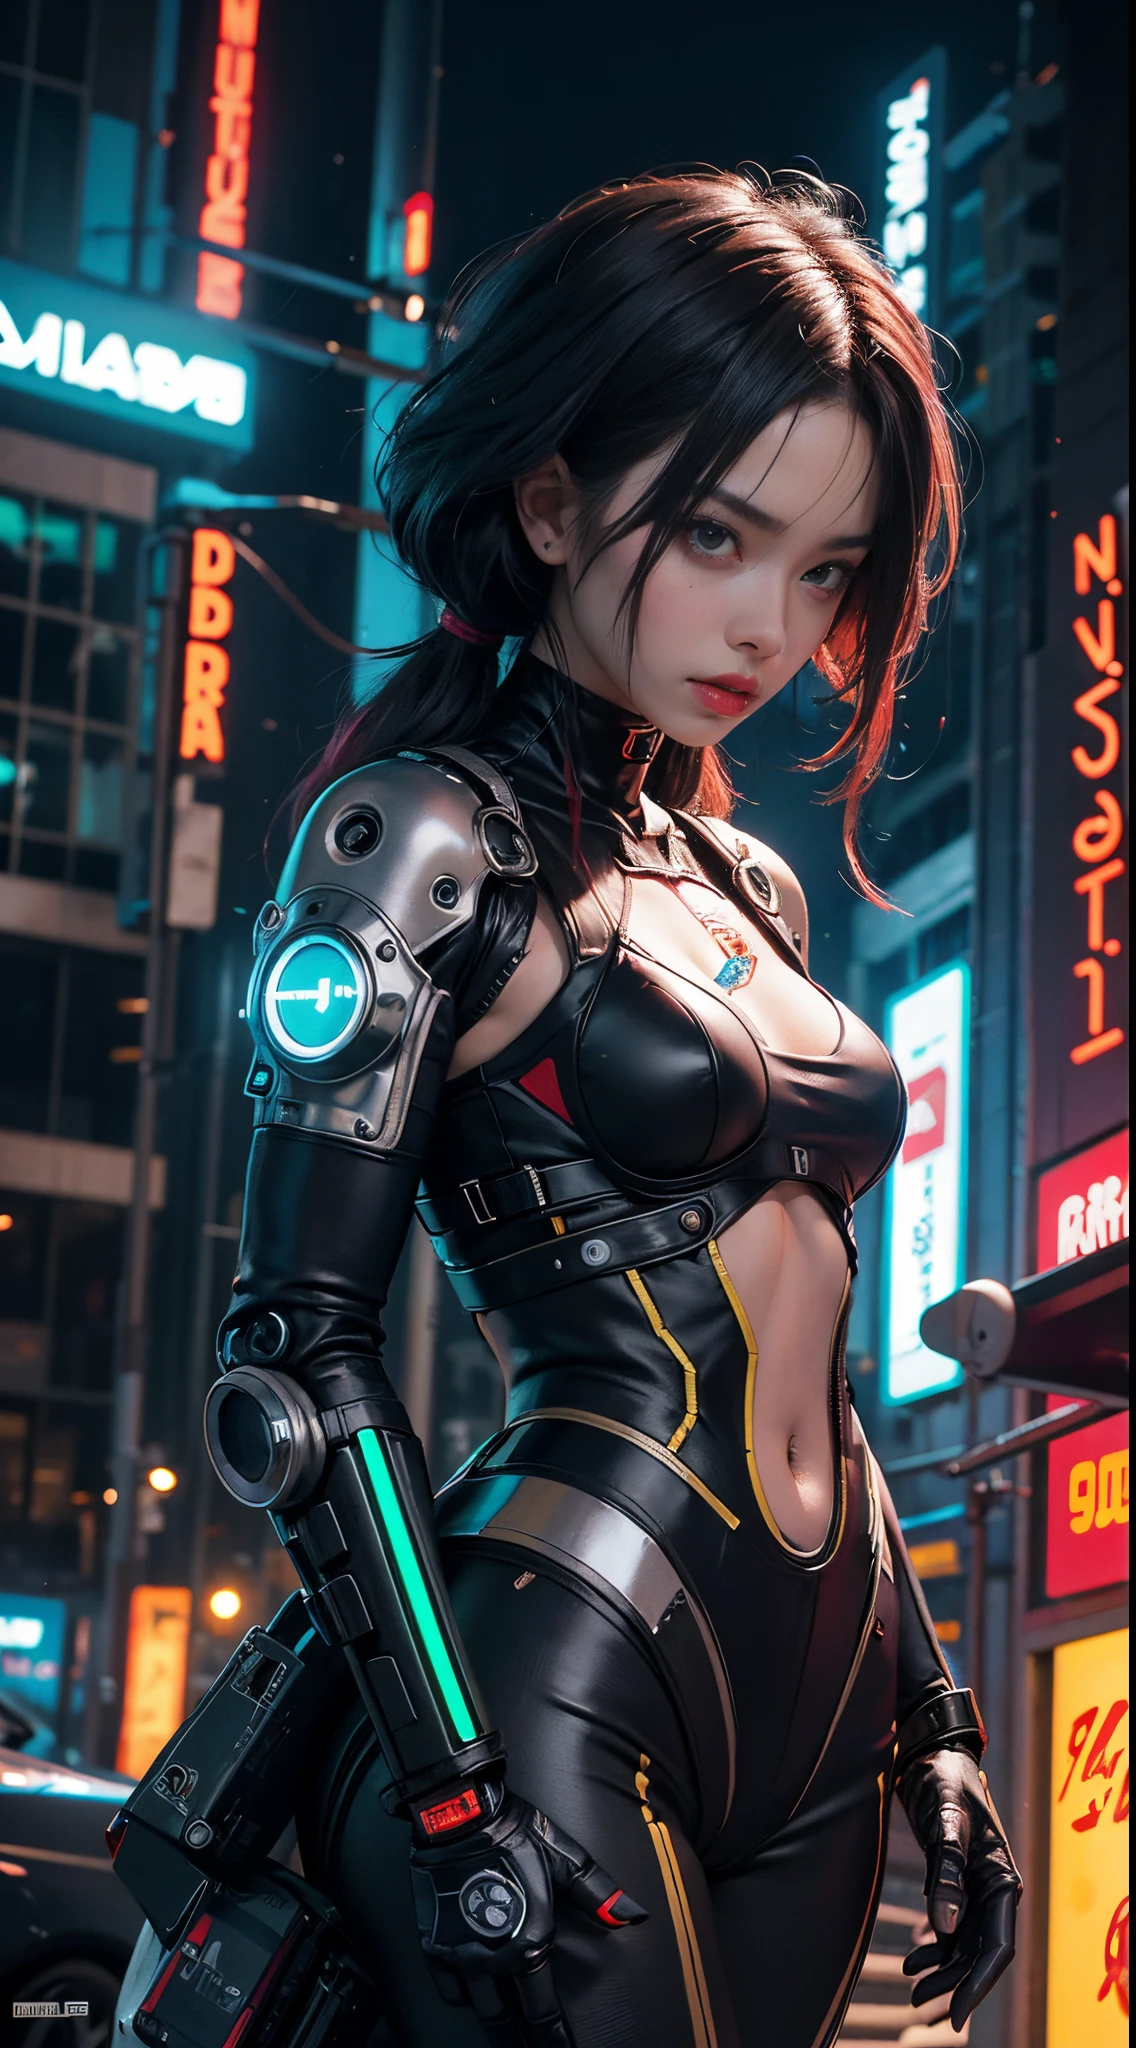 Garota ciborgue cyberpunk retrofuturista com peças de robô no corpo ,taco avançado todo preto , luzes de néon vermelhas ,peitos enormes ,em outro planeta